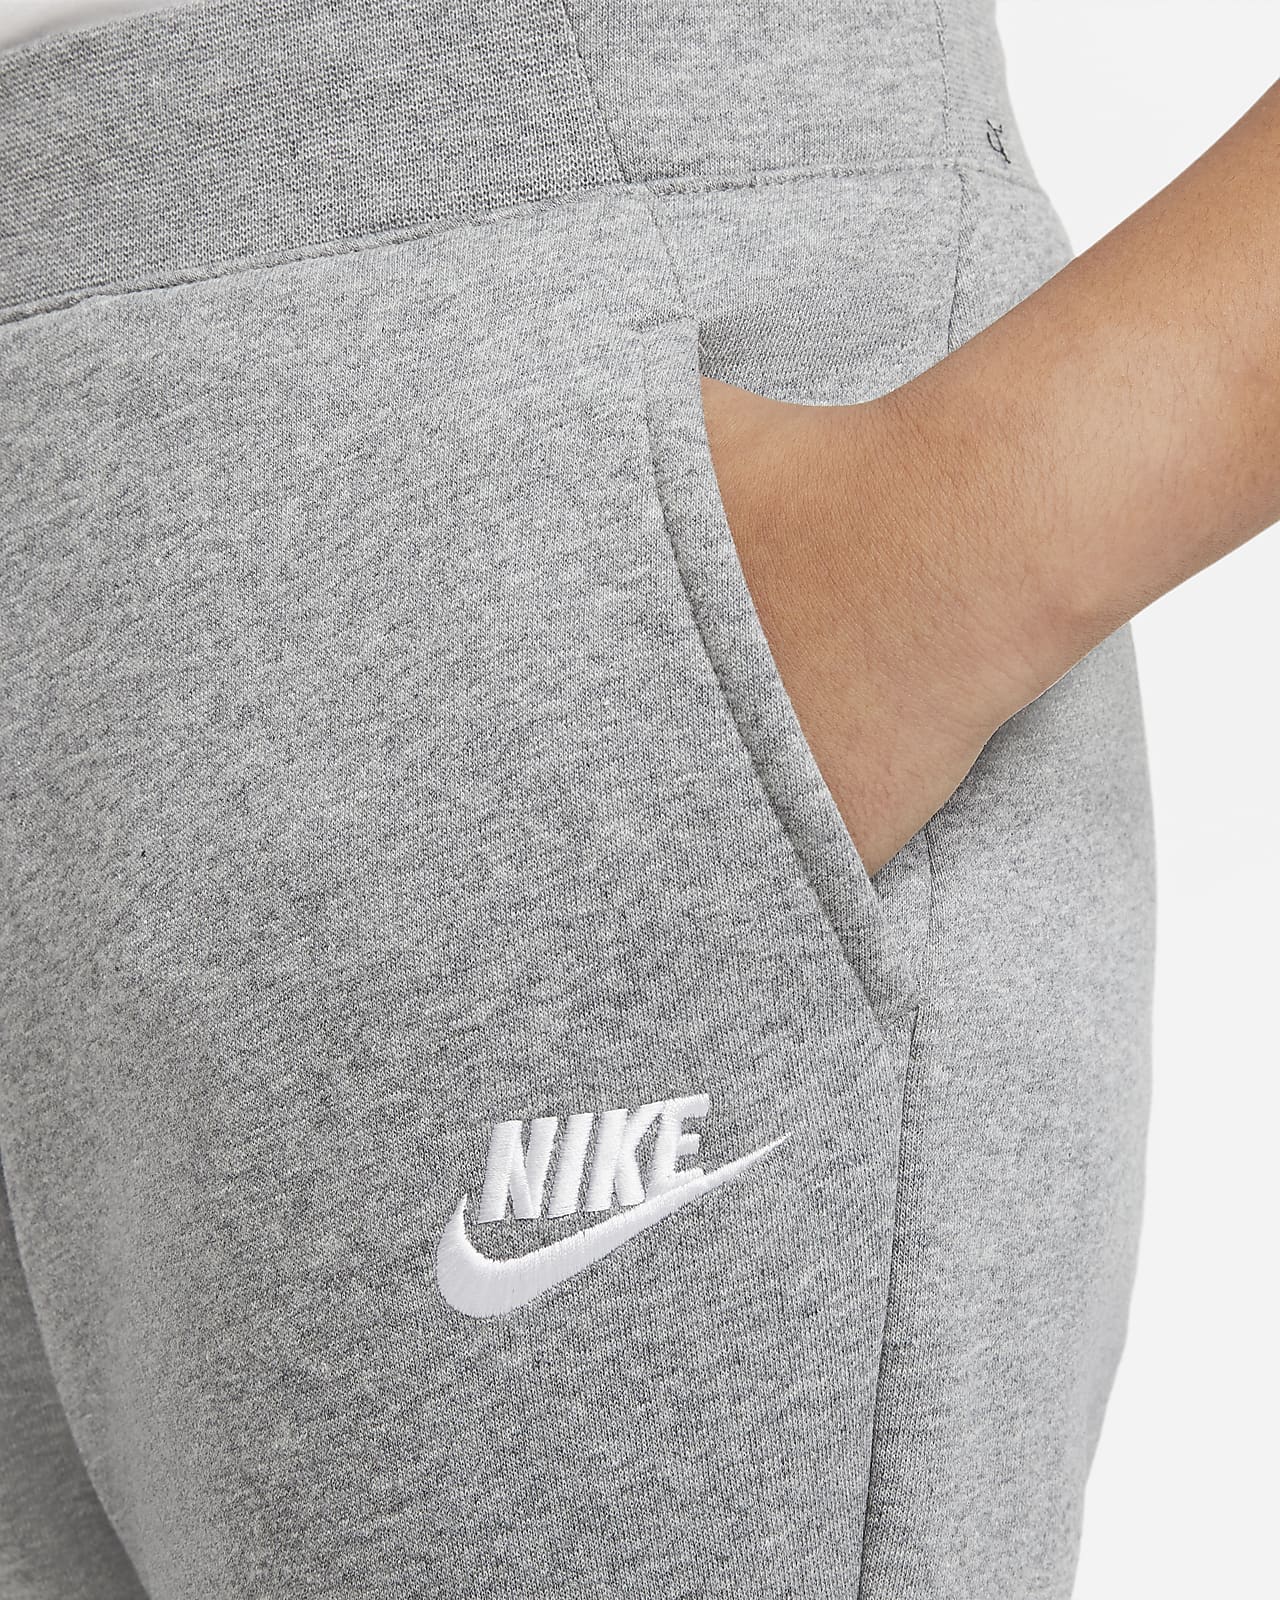 Nike Sportswear Older Kids' (Girls') Trousers (Extended Size). Nike LU